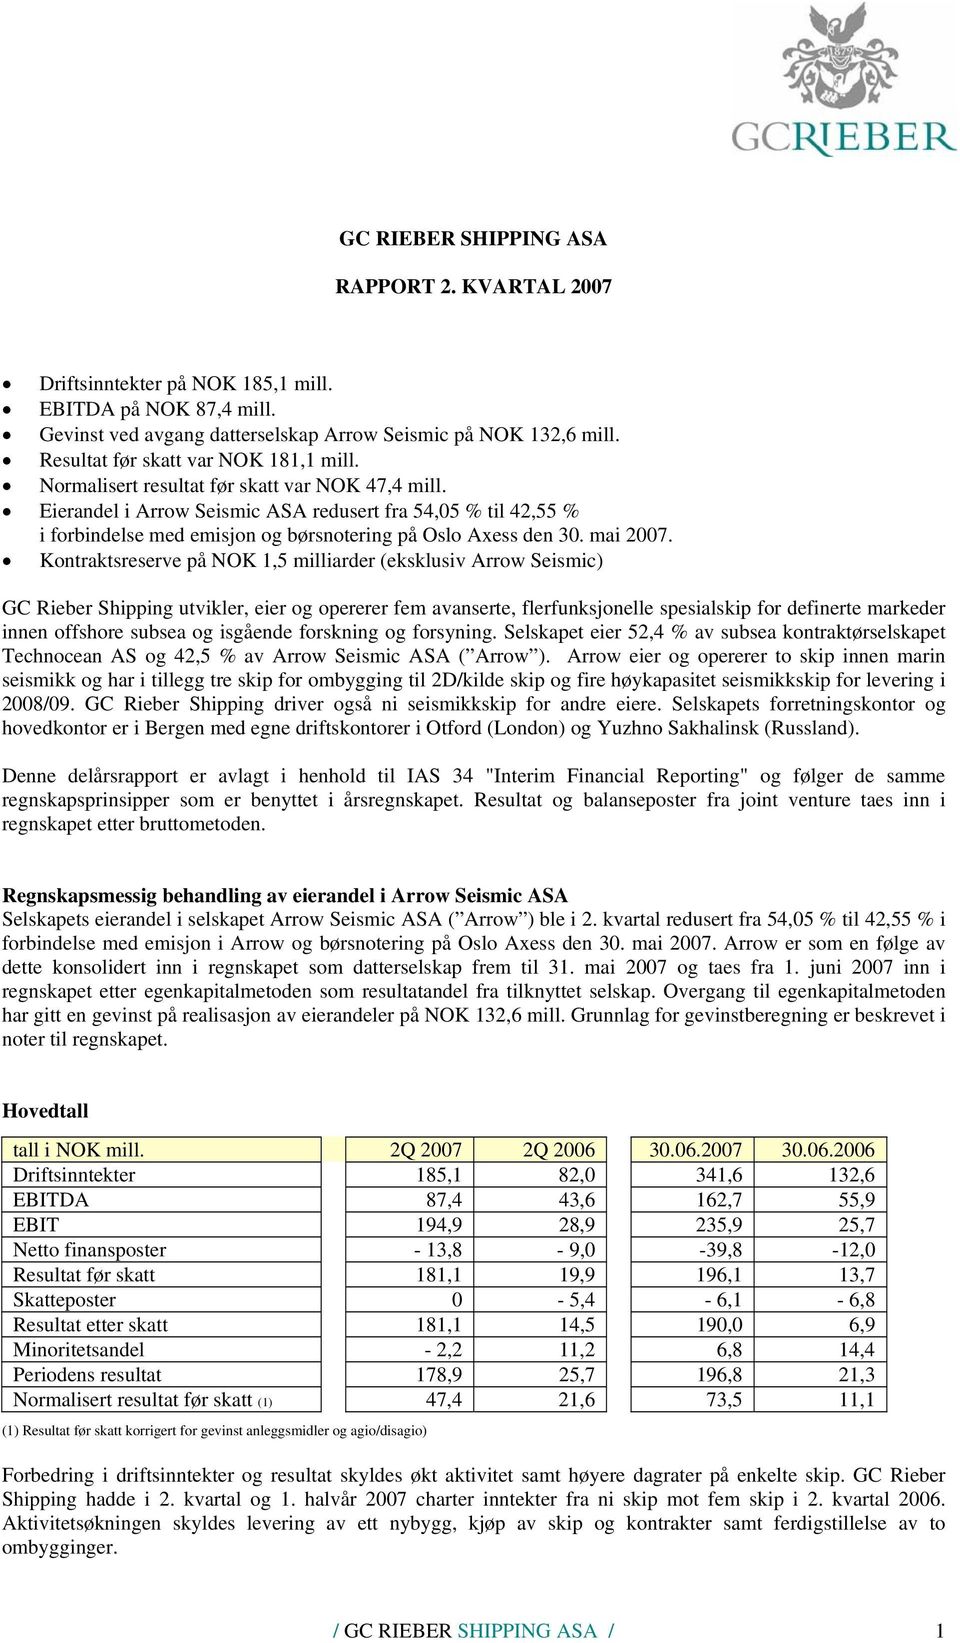 Eierandel i Arrow Seismic ASA redusert fra 54,05 % til 42,55 % i forbindelse med emisjon og børsnotering på Oslo Axess den 30. mai 2007.